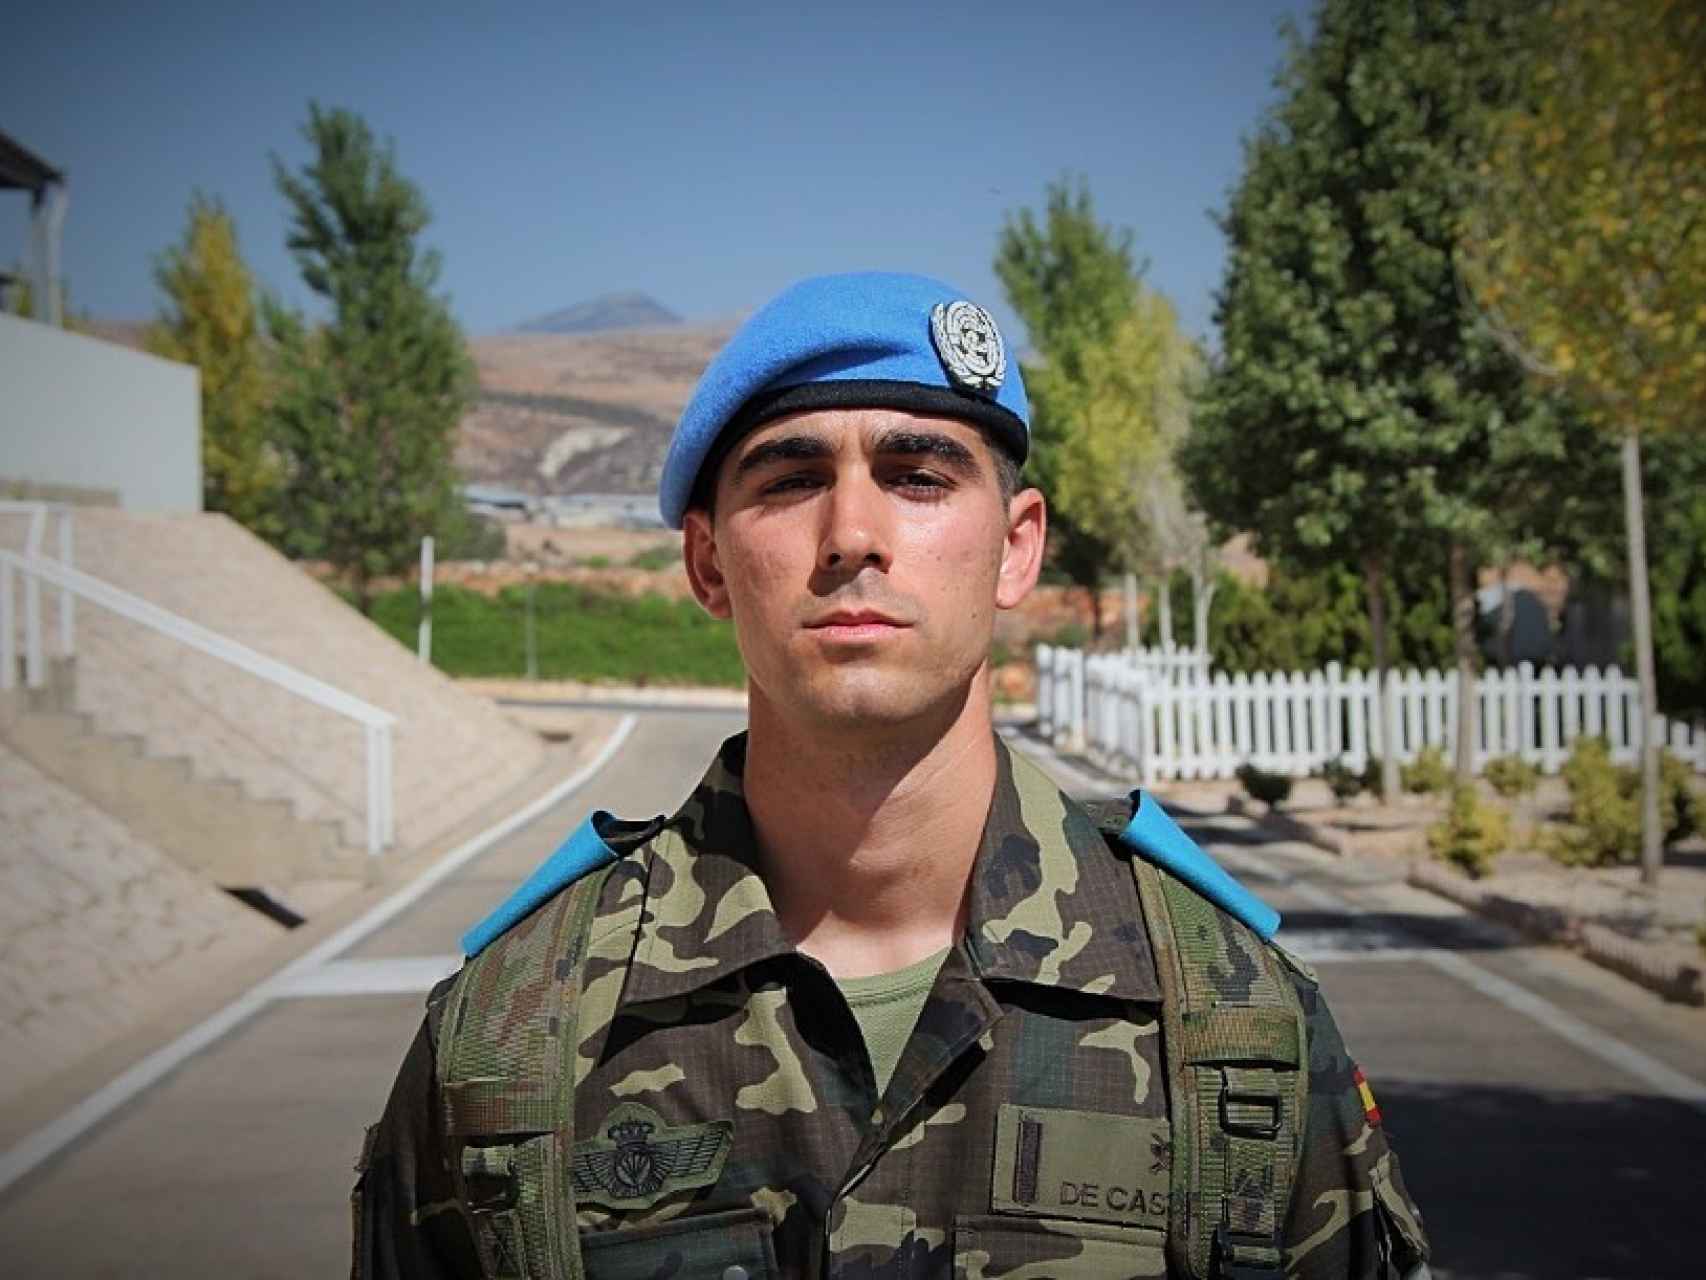 Caballero Legionario Paracaidista David de Castro, 26 años.